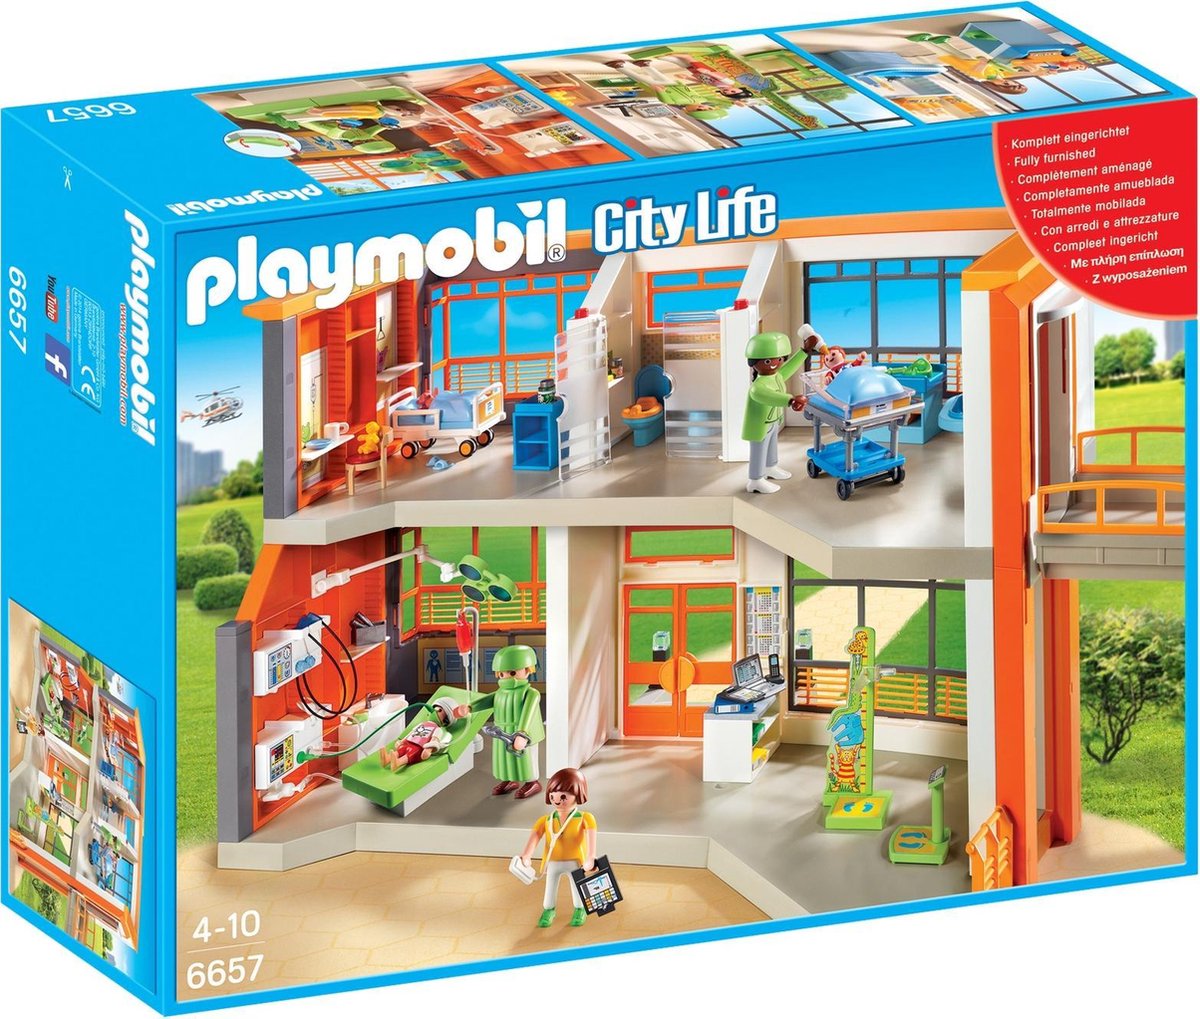 Playmobil City Life Hôpital pédiatrique aménagé | bol.com